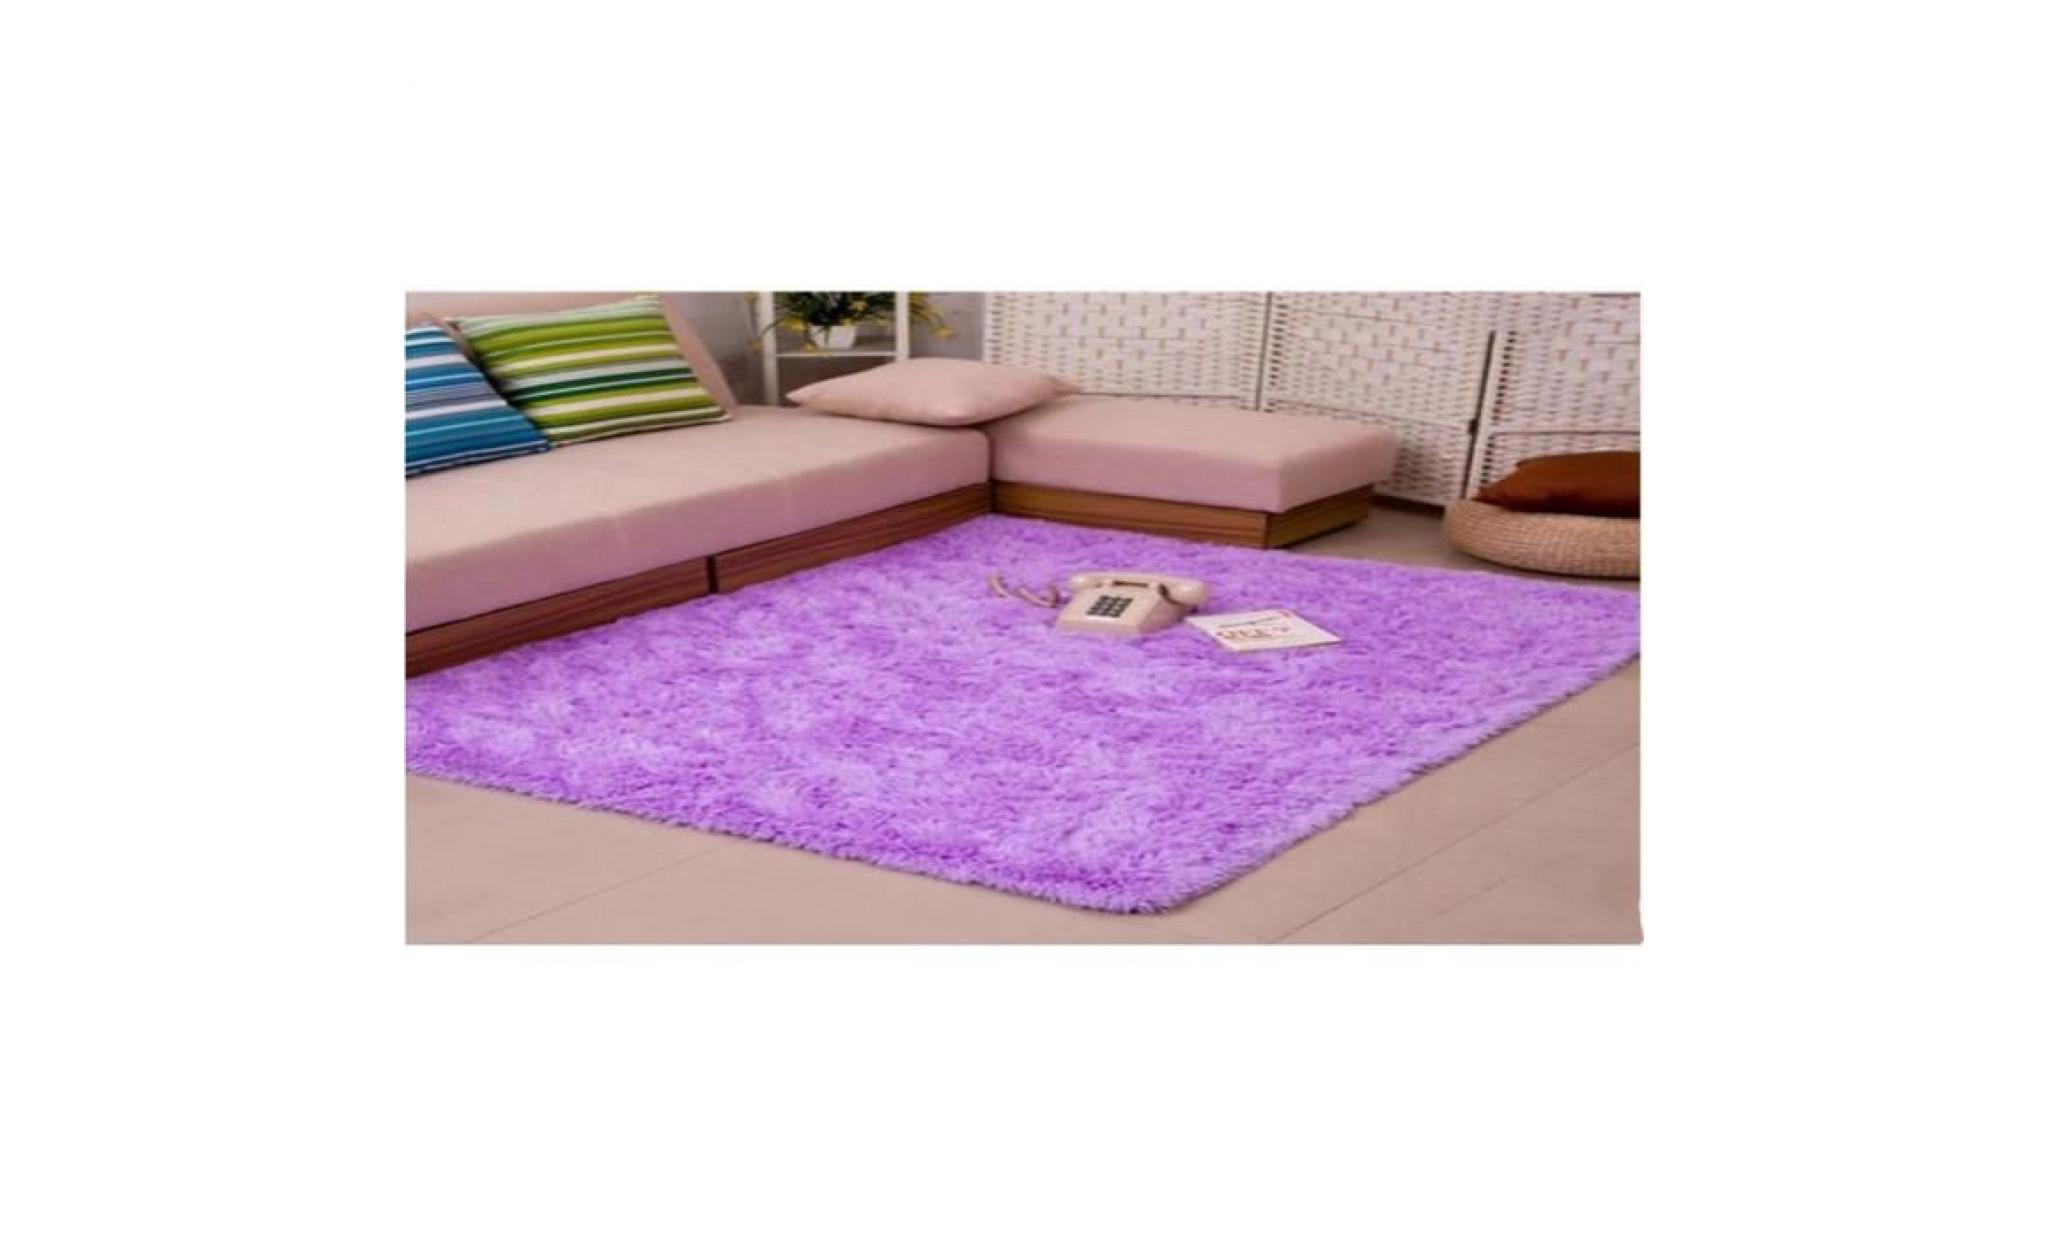 ffjts brand new fashion carpet salon intérieur chambre à coucher cosmétique anti bactérienne anti skid style simple , purple ,